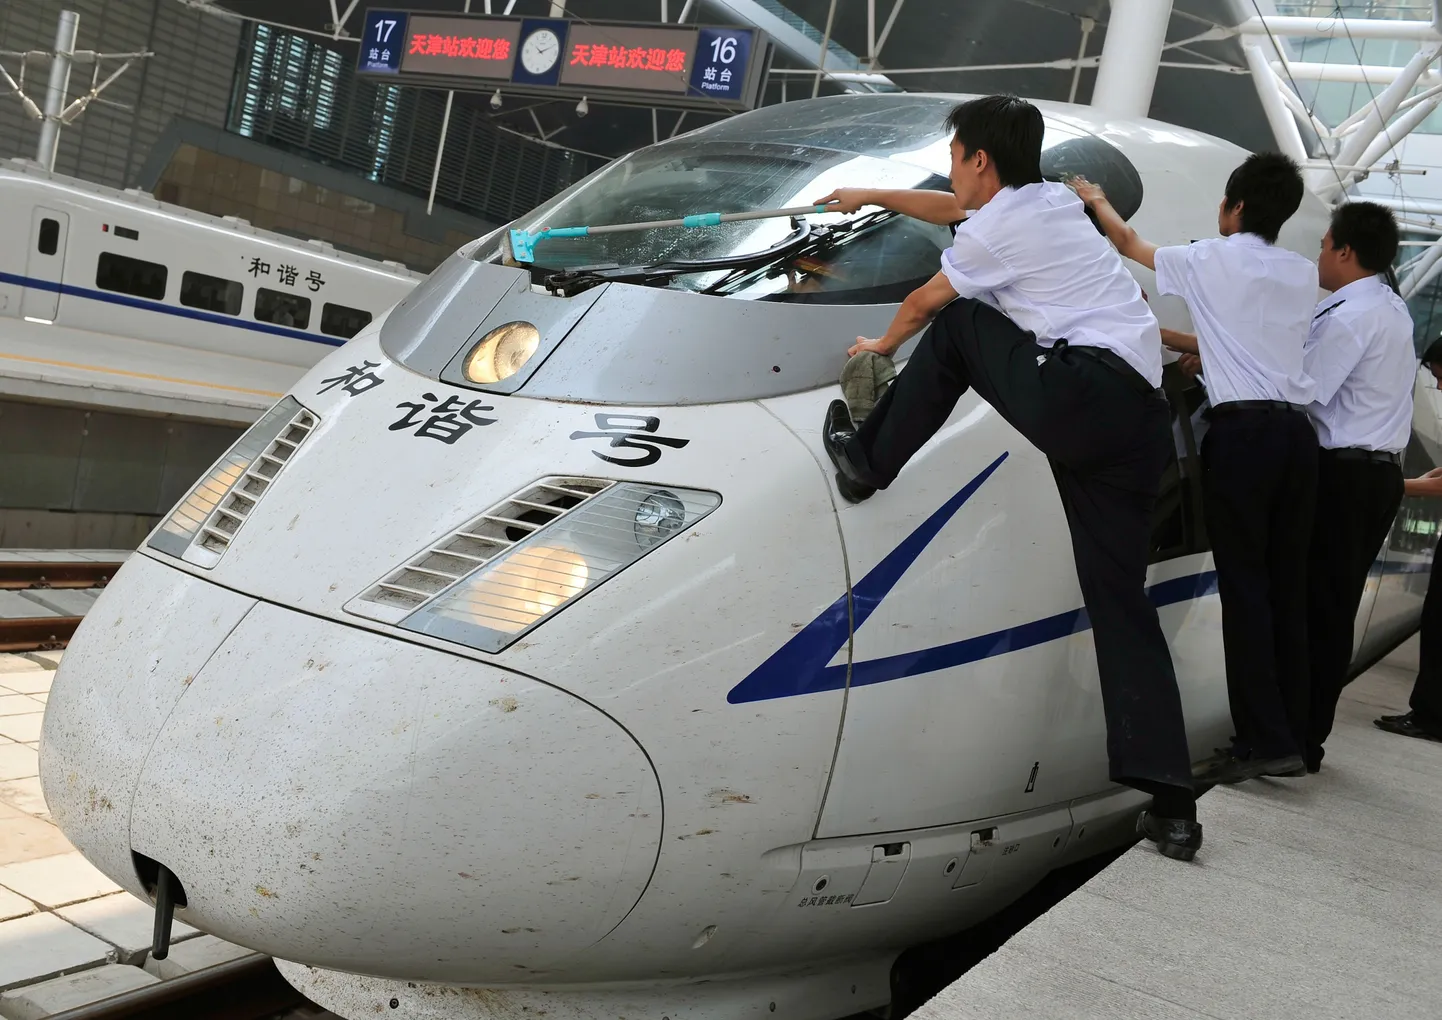 Pildil puhastavad töölised Pekingi ja Tianjin'i vahel liikuvat kiirrongi, mis alustas reise enne olümpiamänge.